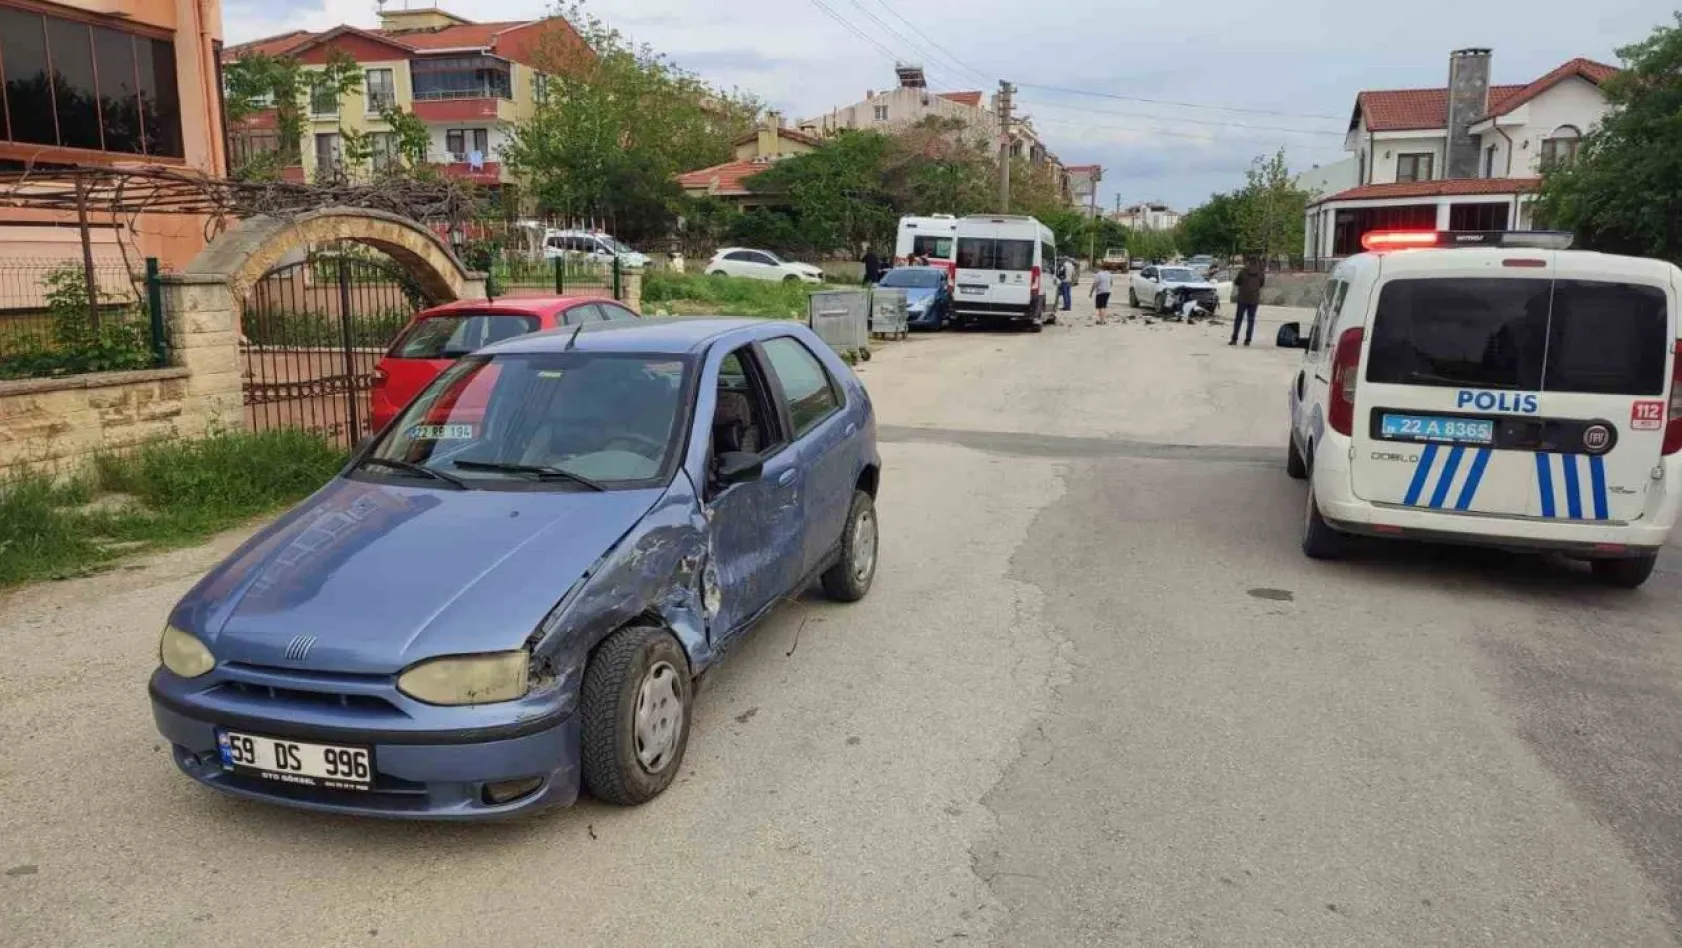 Keşan'da 14 yaşındaki çocuğun kullandığı otomobil kaza yaptı: 3 yaralı